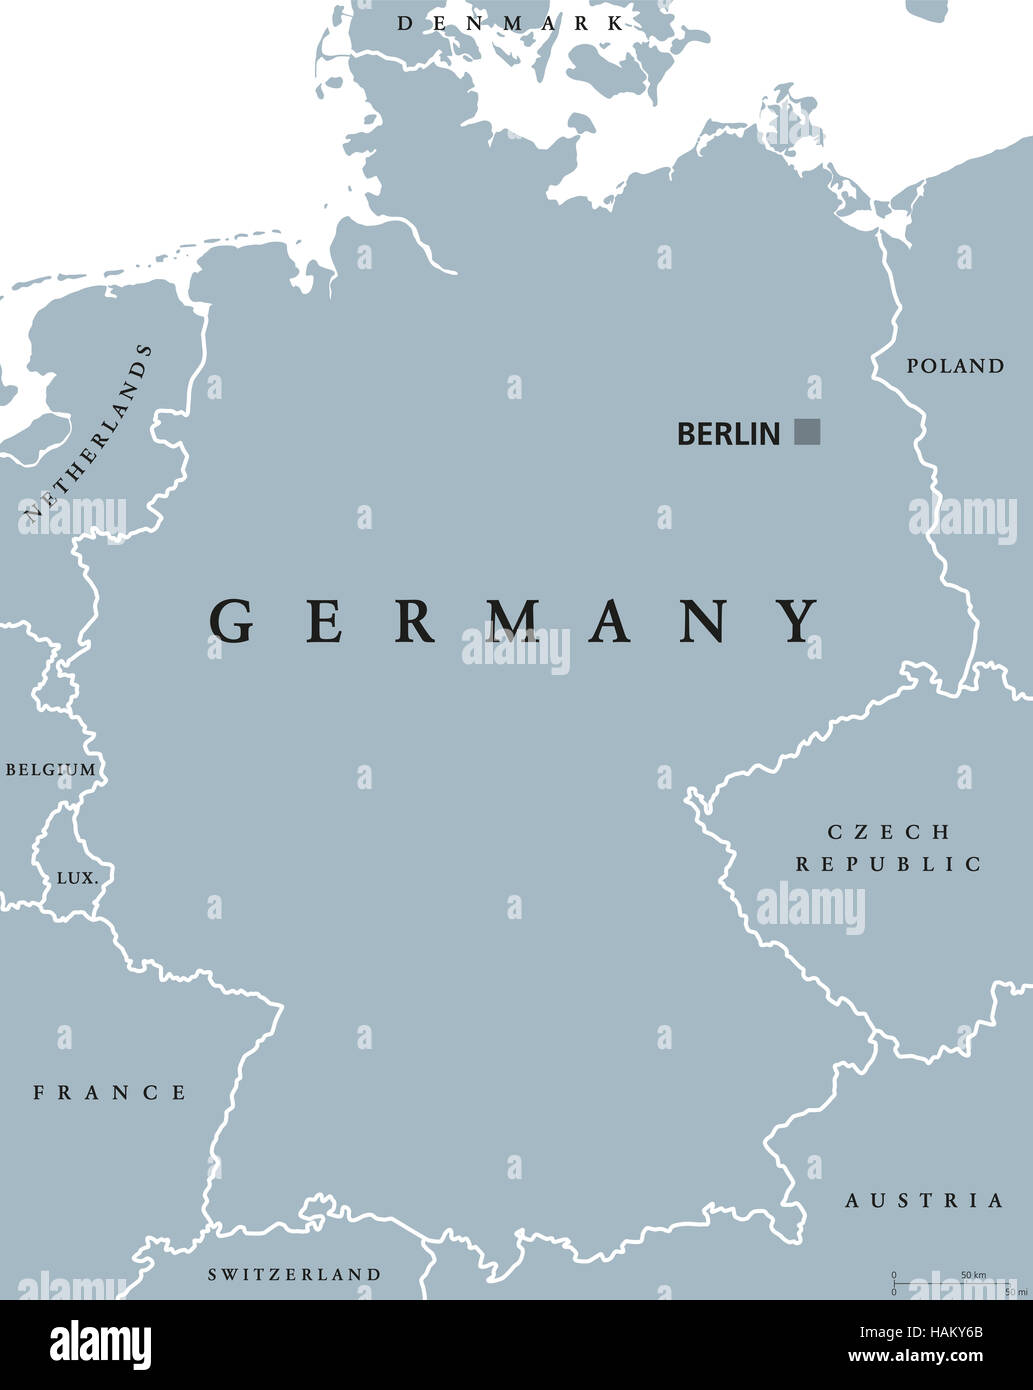 Alemania mapa político con capitales de Berlín, las fronteras nacionales y de países vecinos. Ilustración gris con rótulos en Inglés. Foto de stock